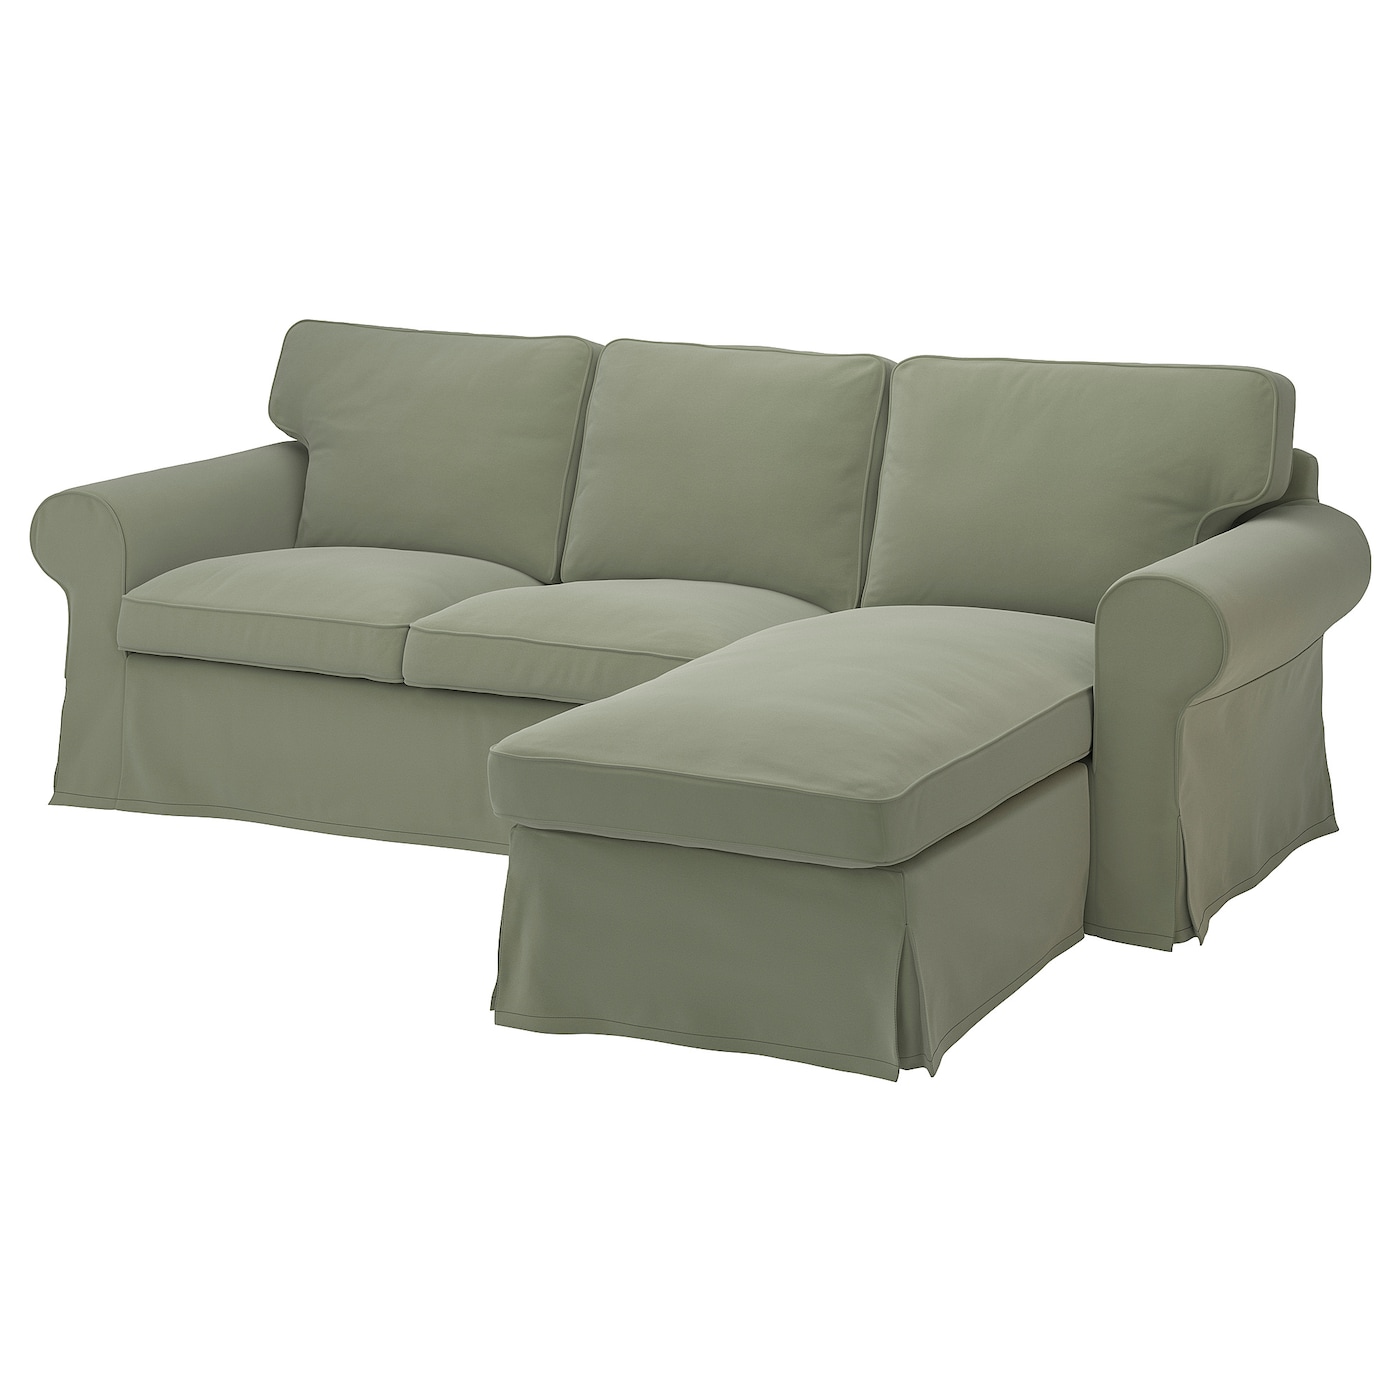 3-местный диван с шезлонгом - IKEA EKTORP, 88x88x252см, светло-зеленый, ЭКТОРП ИКЕА